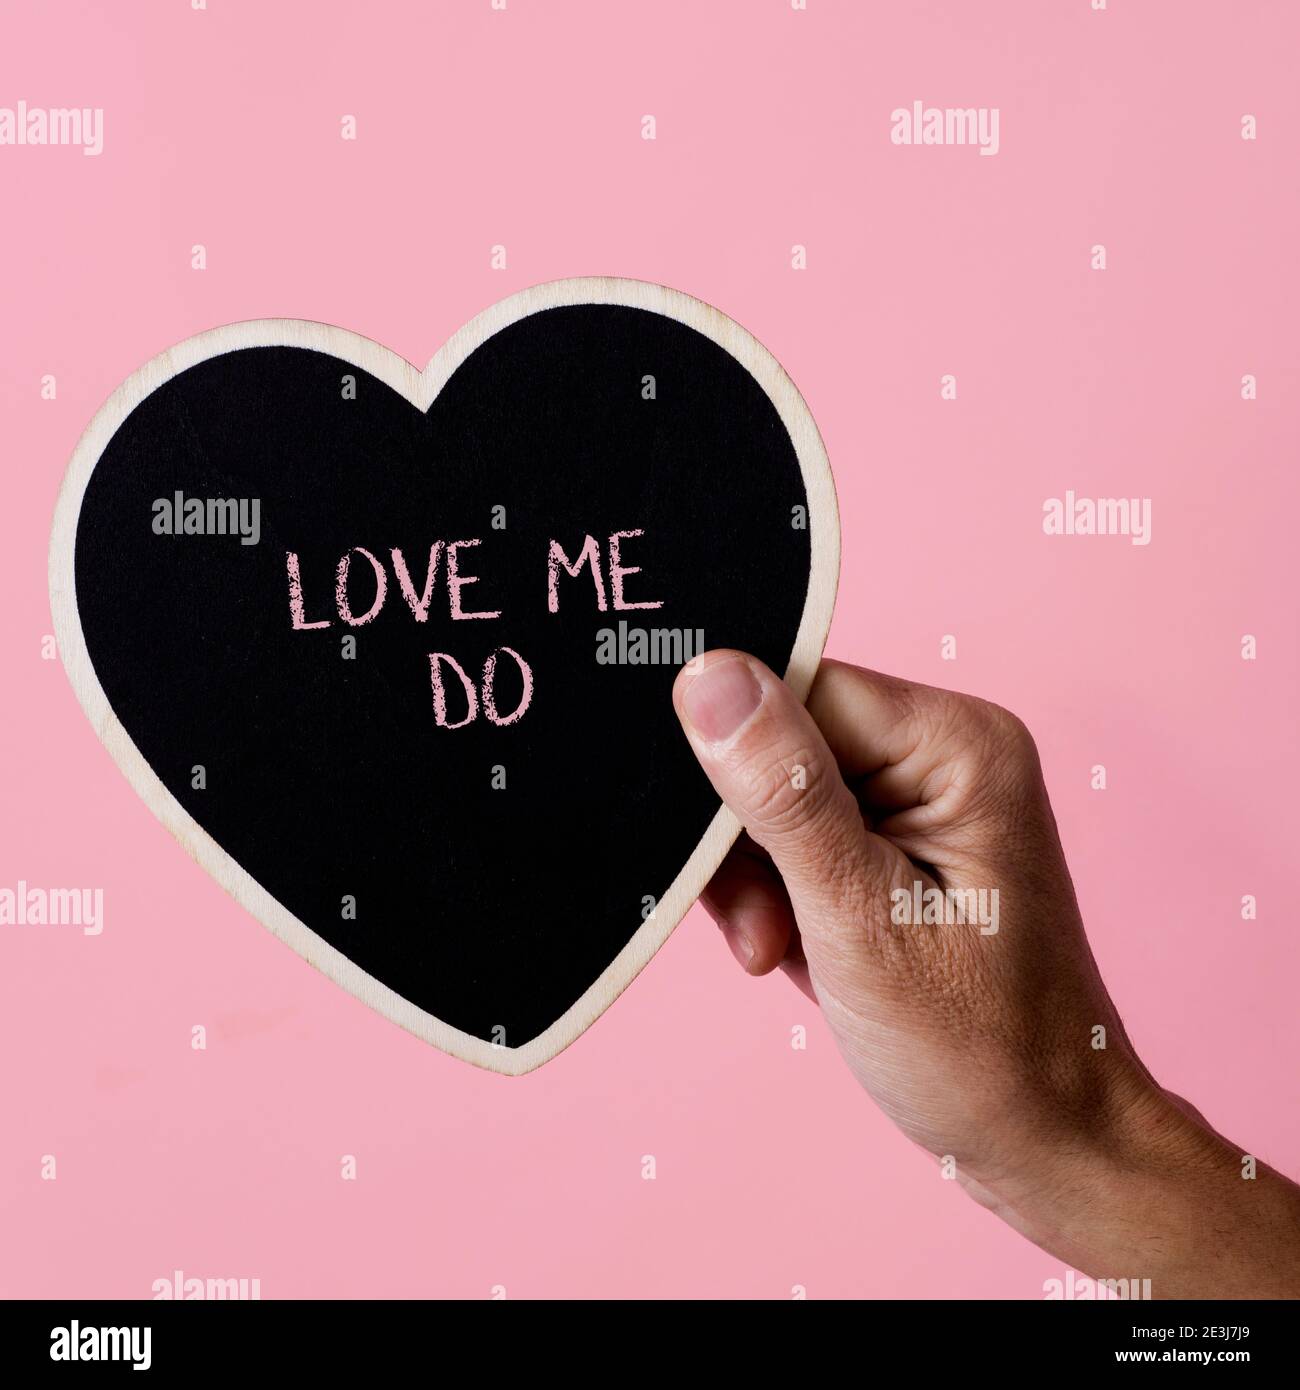 Nahaufnahme eines Mannes, der ein schwarzes herzförmiges Zeichen in der Hand hält, mit dem Text Love Me Do, der darin geschrieben ist, auf einem rosa Hintergrund, mit einem quadratischen Format Stockfoto